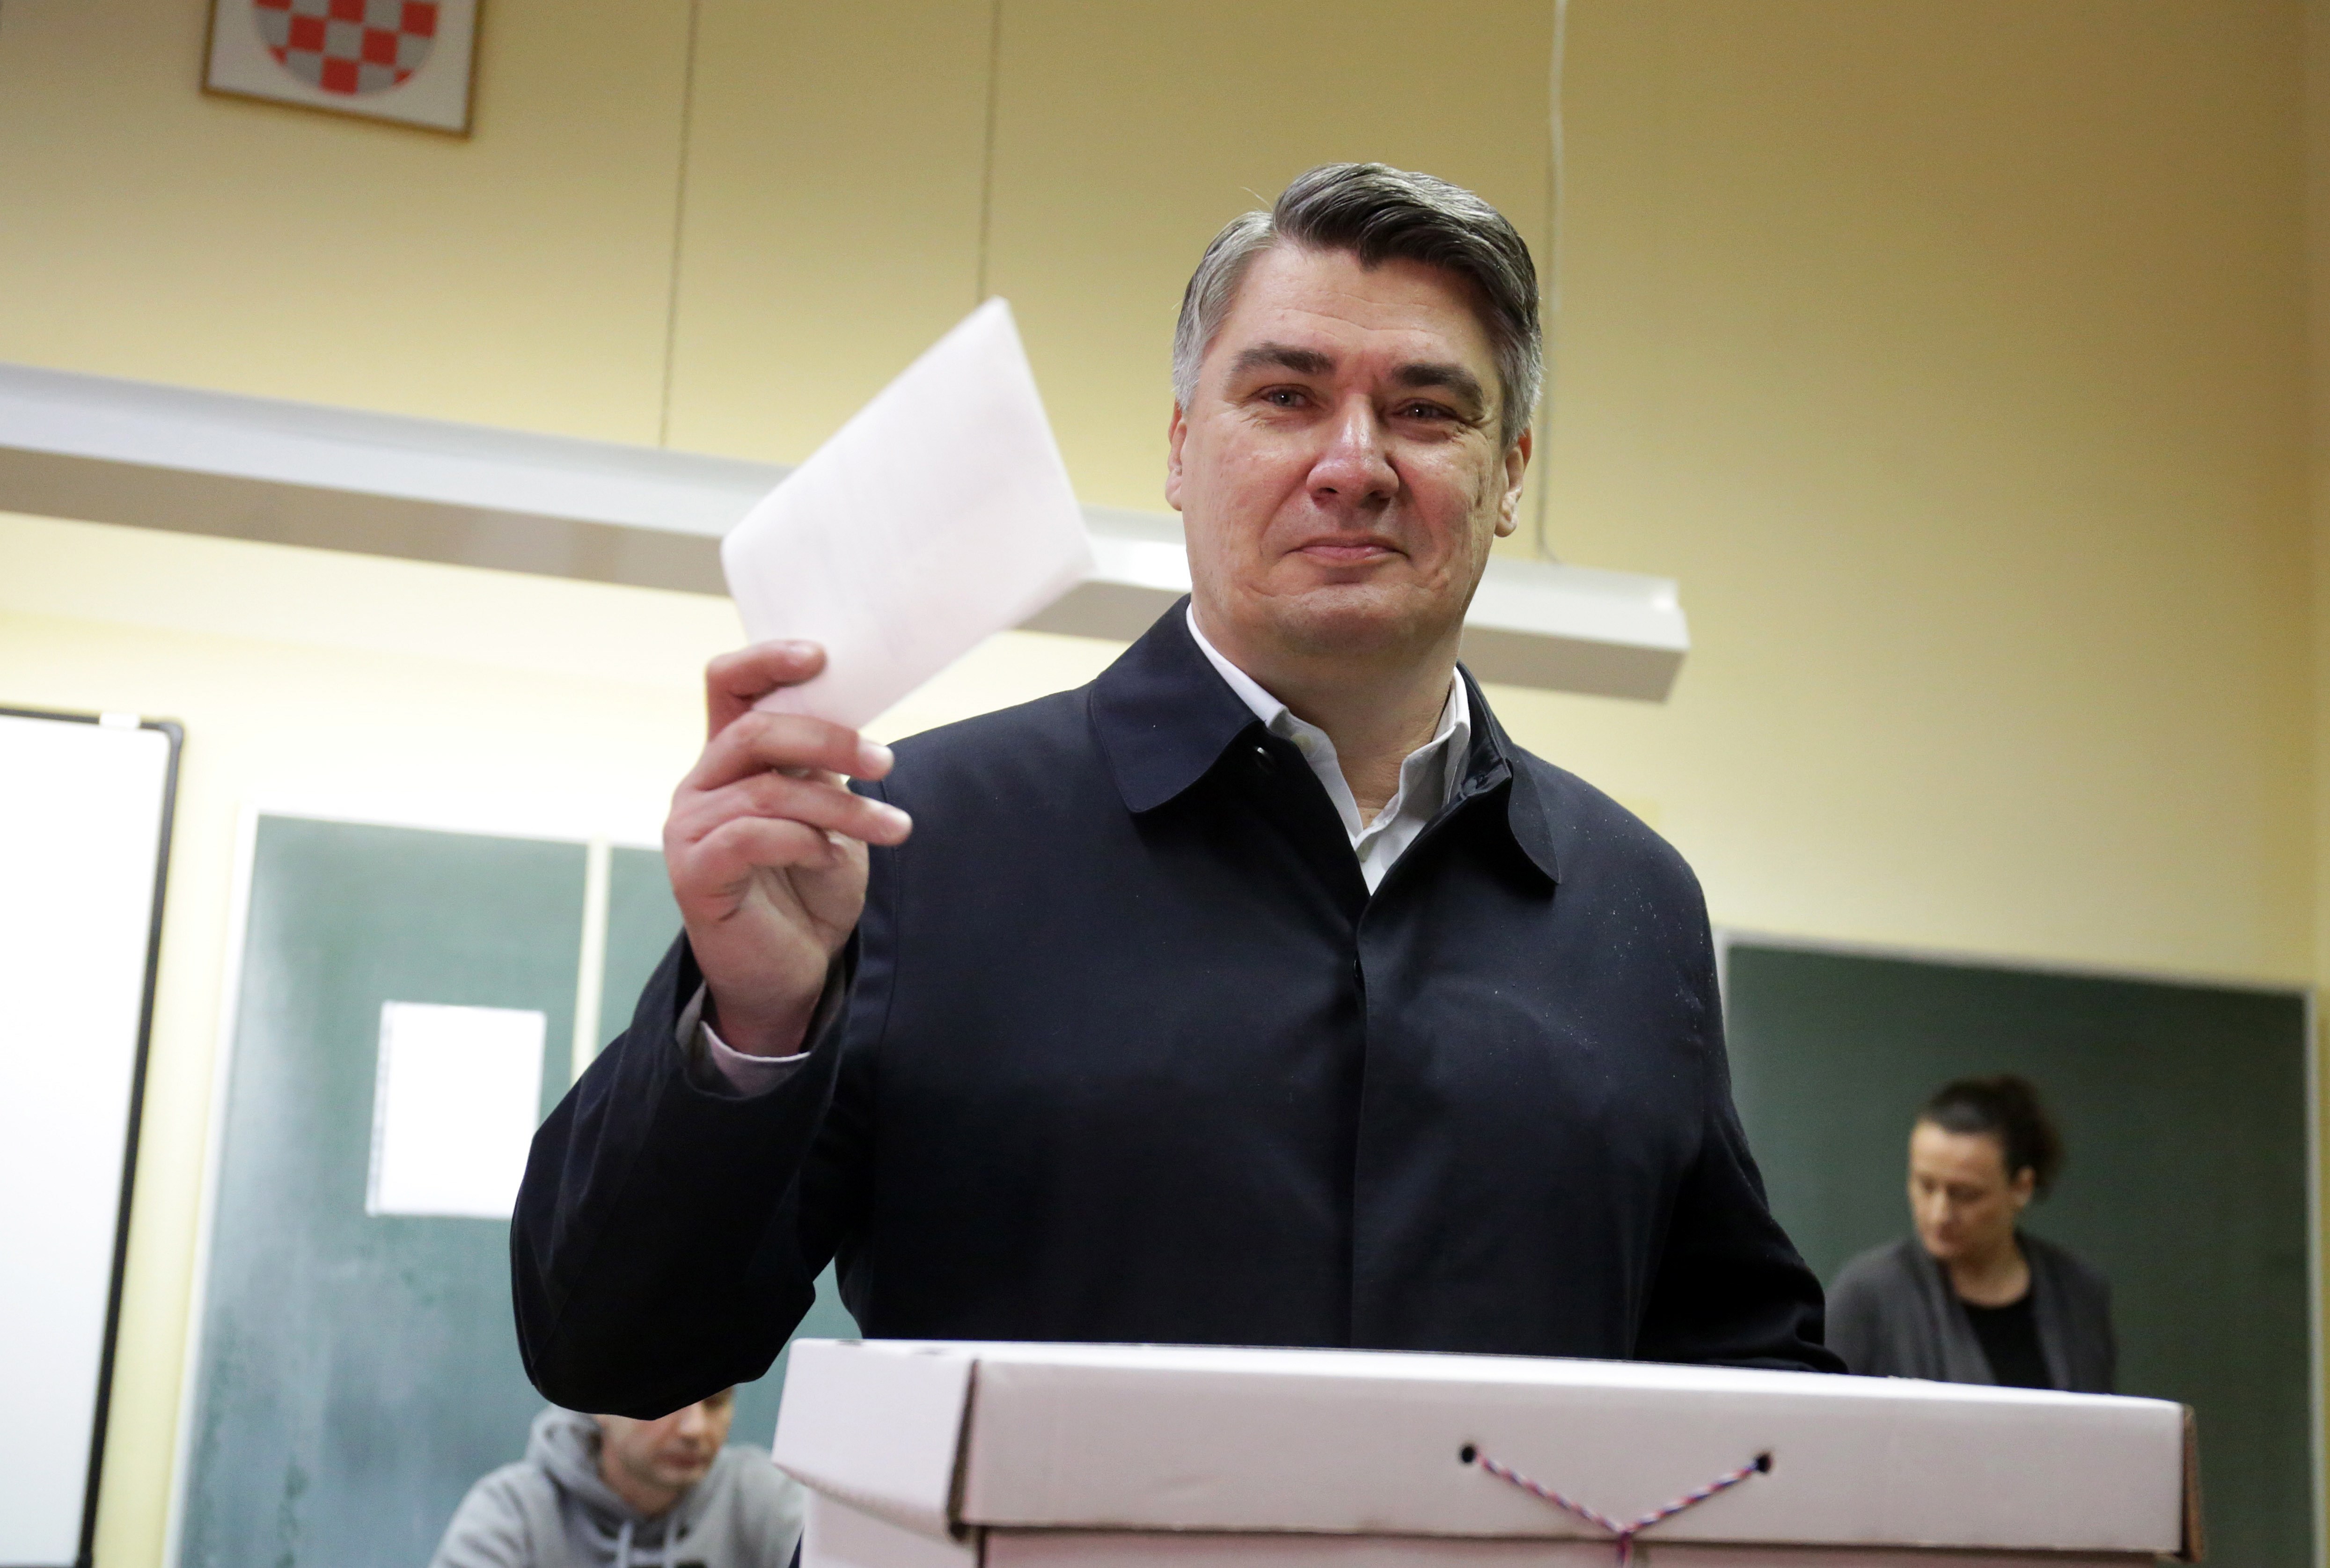 Candidato socialdemócrata gana presidenciales en Croacia, pero habrá segunda vuelta